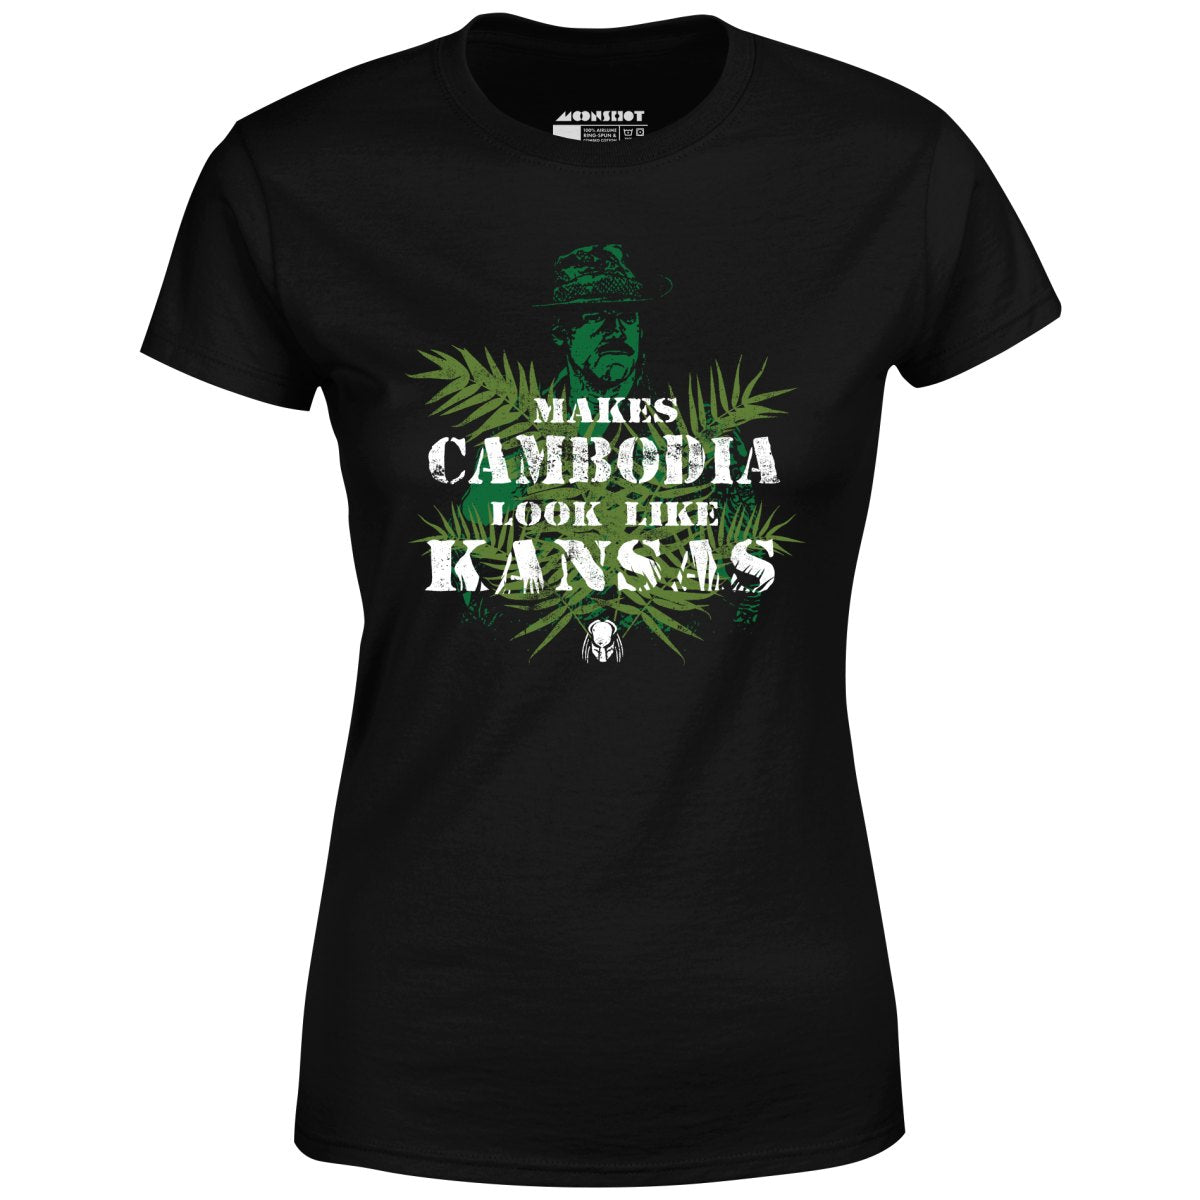 Predator - Makes Cambodia Look Like Kansas - Women's T-Shirt